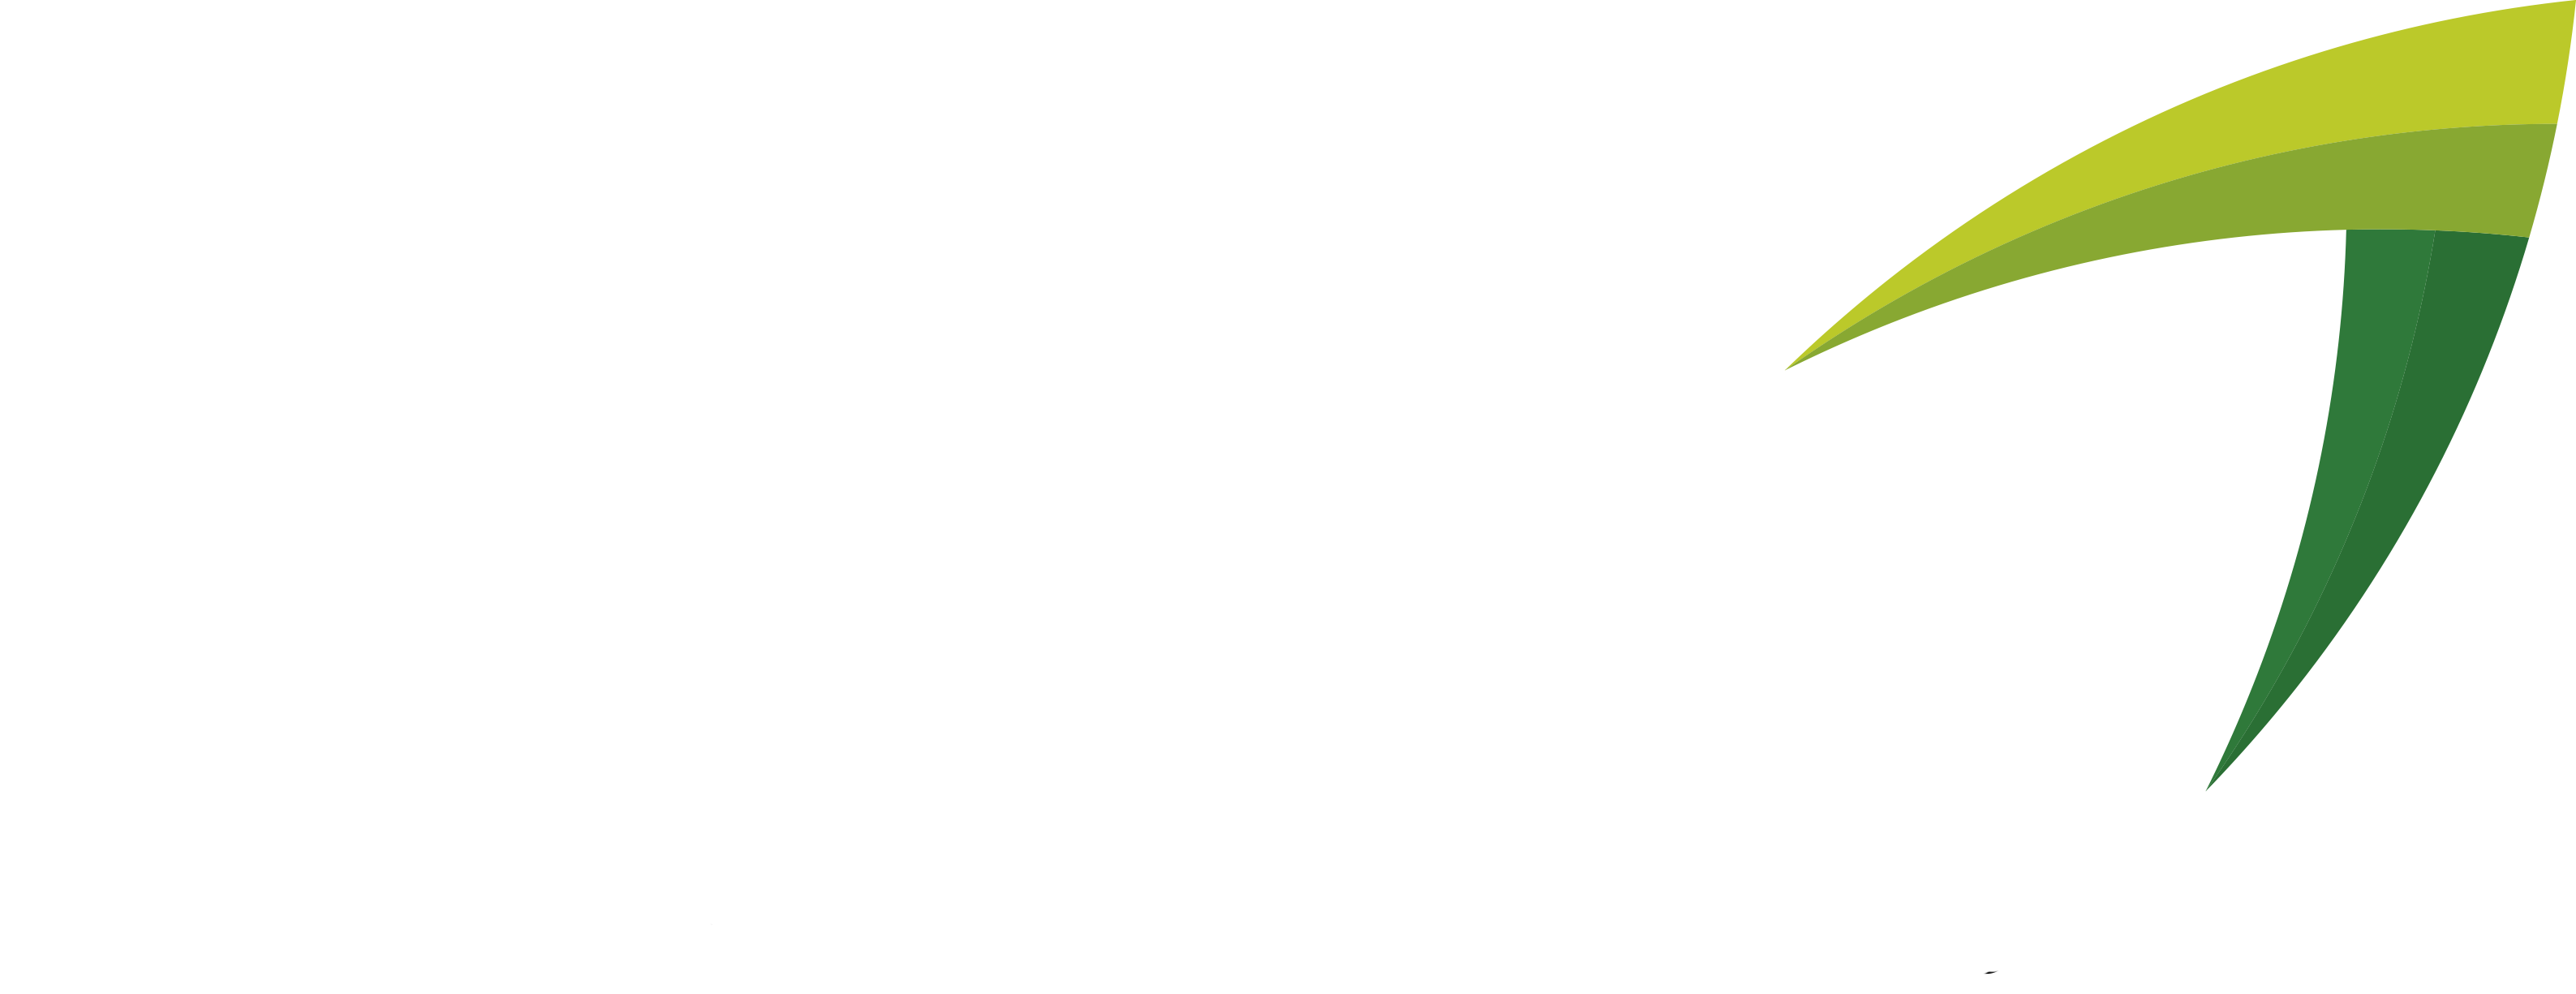 Carvalho Ambiental